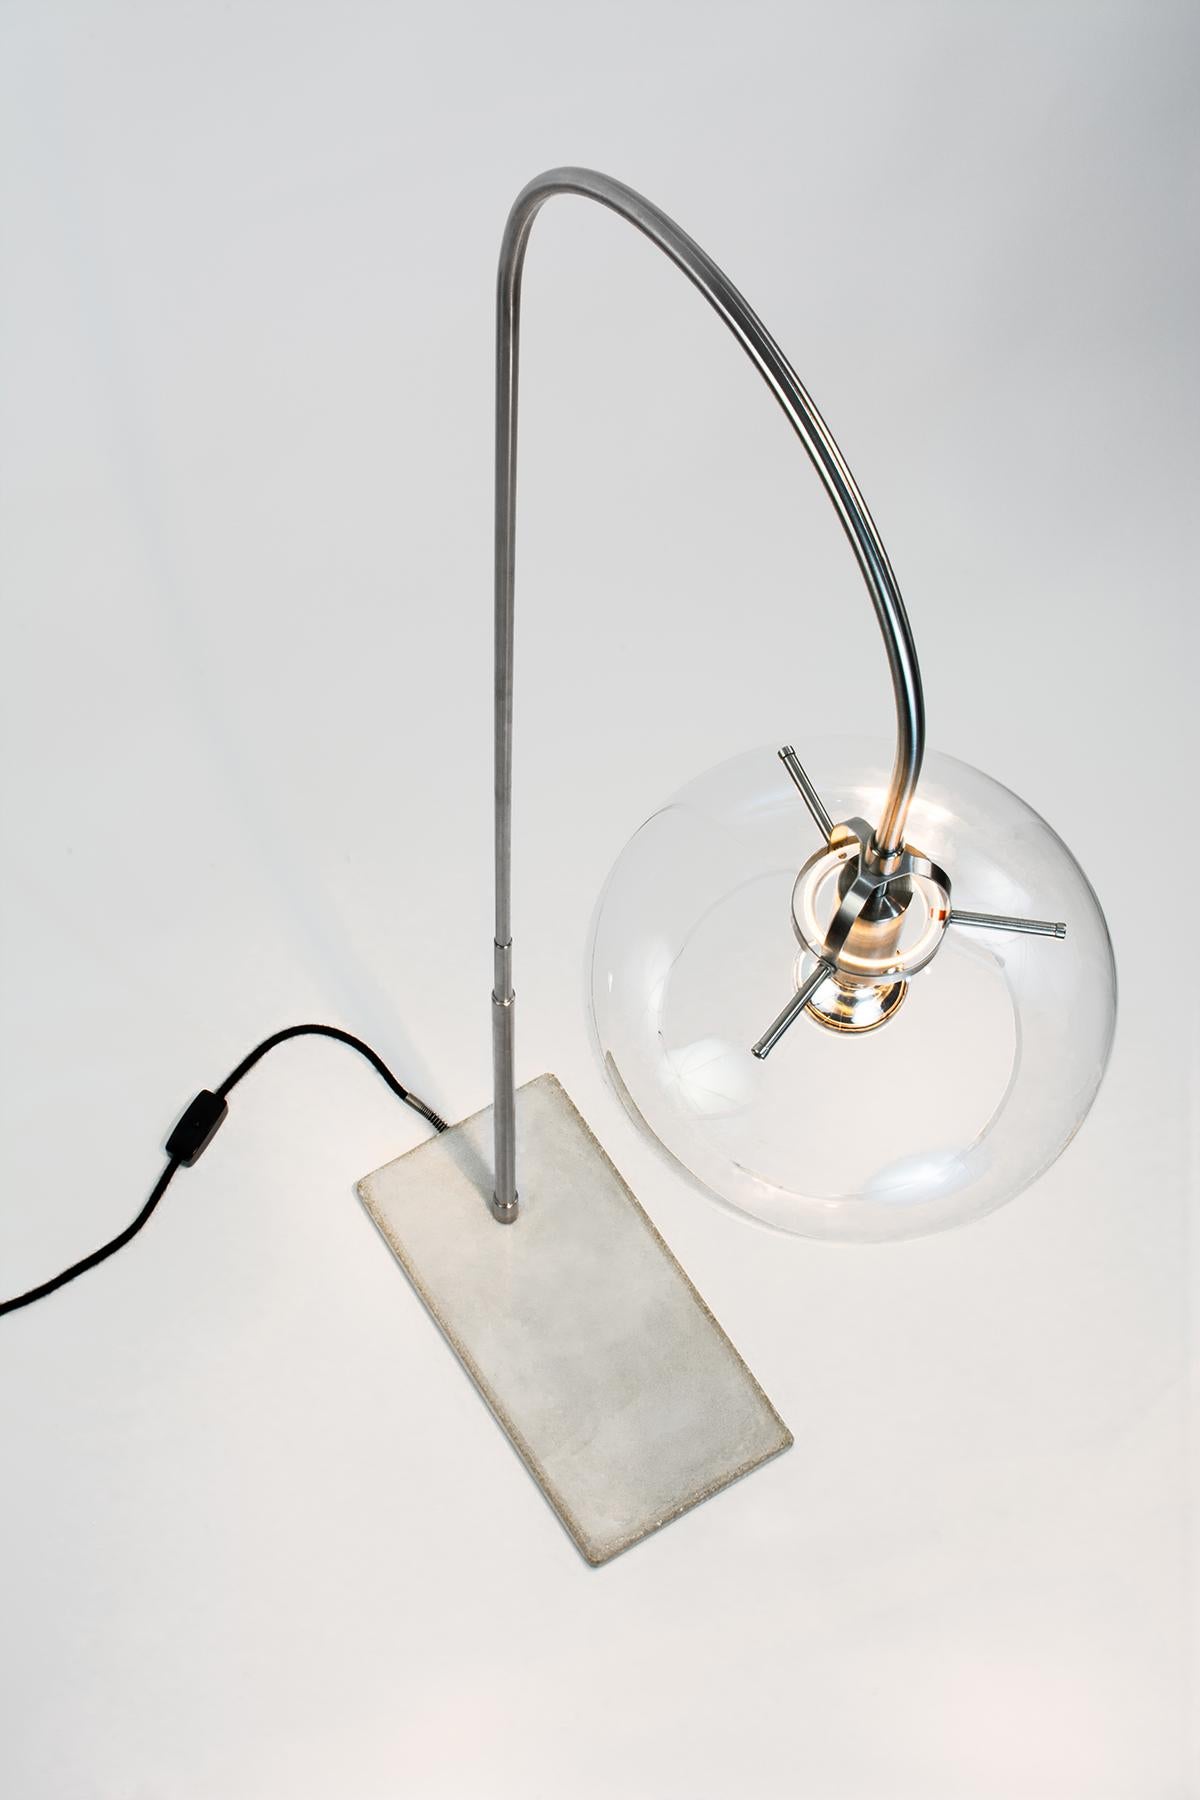 Ce remarquable lampadaire est un chef-d'œuvre d'inspiration Art déco qui ne manquera pas d'impressionner. La lampe se compose de composants élégants en acier inoxydable et d'un abat-jour en verre transparent, tandis que la base est construite en